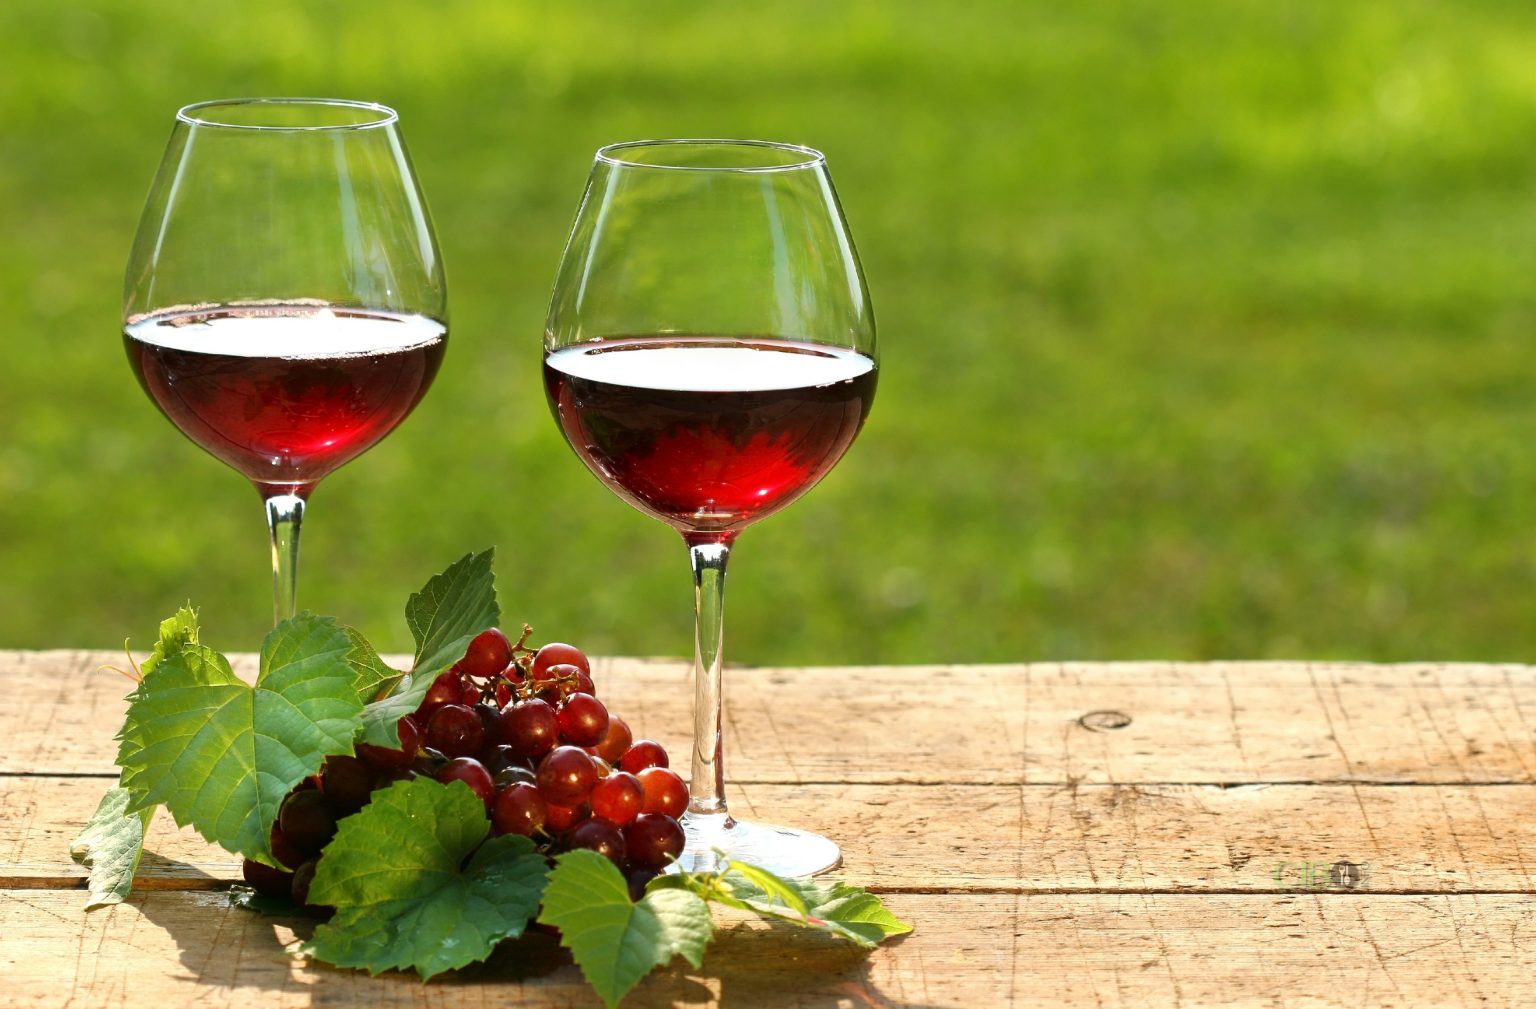 Un'immagine di vino rosso